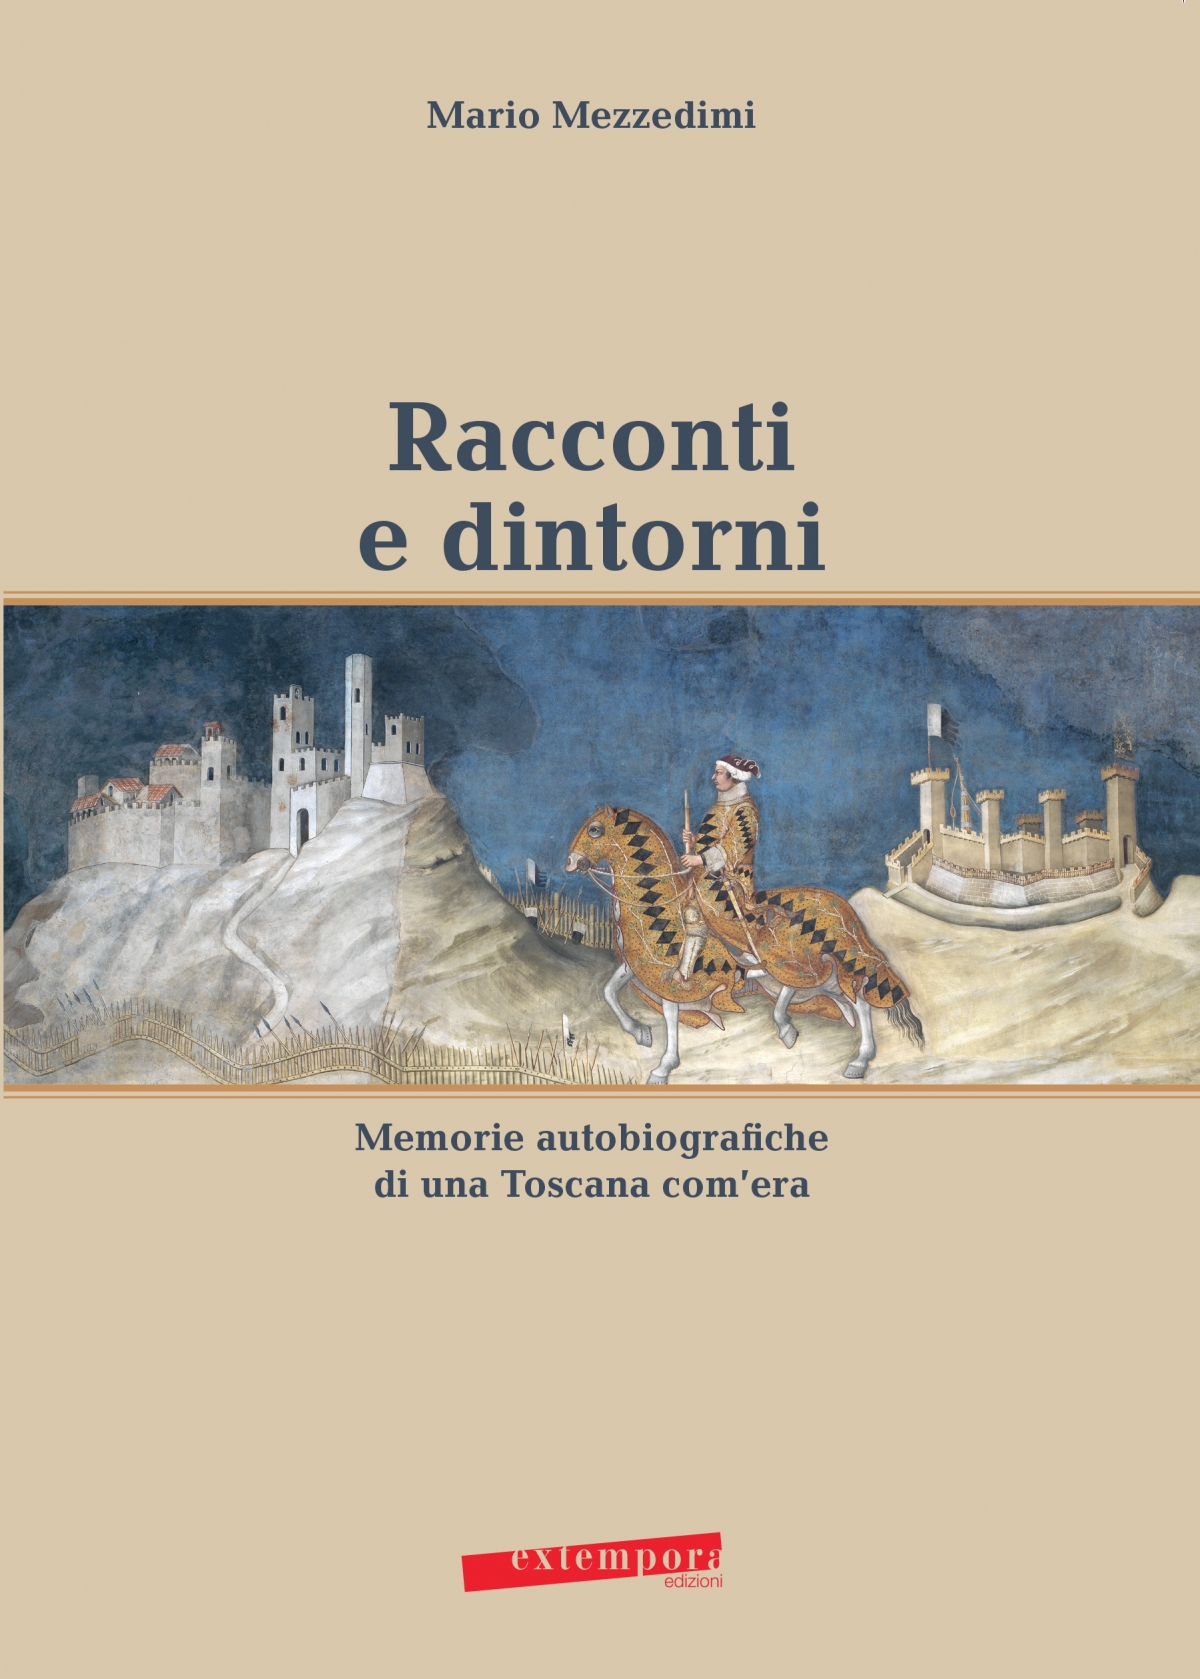 Mario Mezzedimi, Racconti e dintorni, Extempora Edizioni, Siena, 2016
